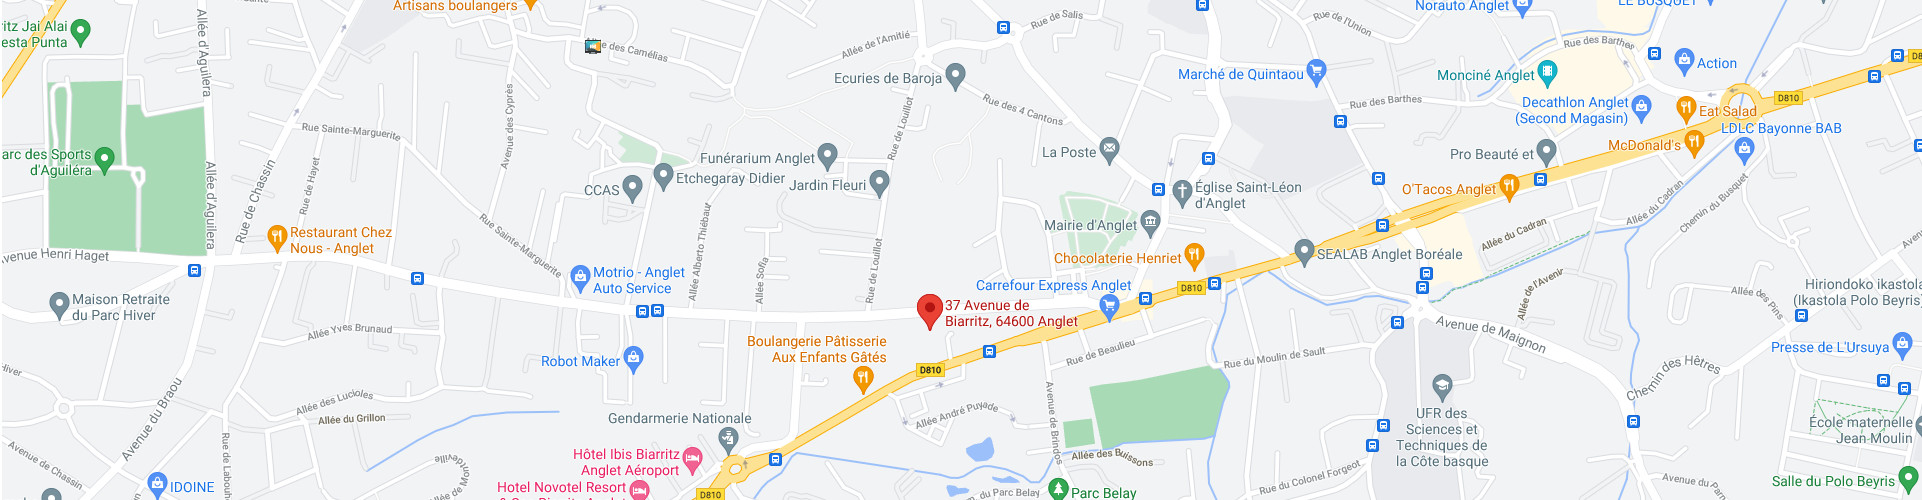 Cartographie Google Maps - Opteam Avocats - Immeuble le millésime, 37 avenue de Biarritz, 64600 Anglet